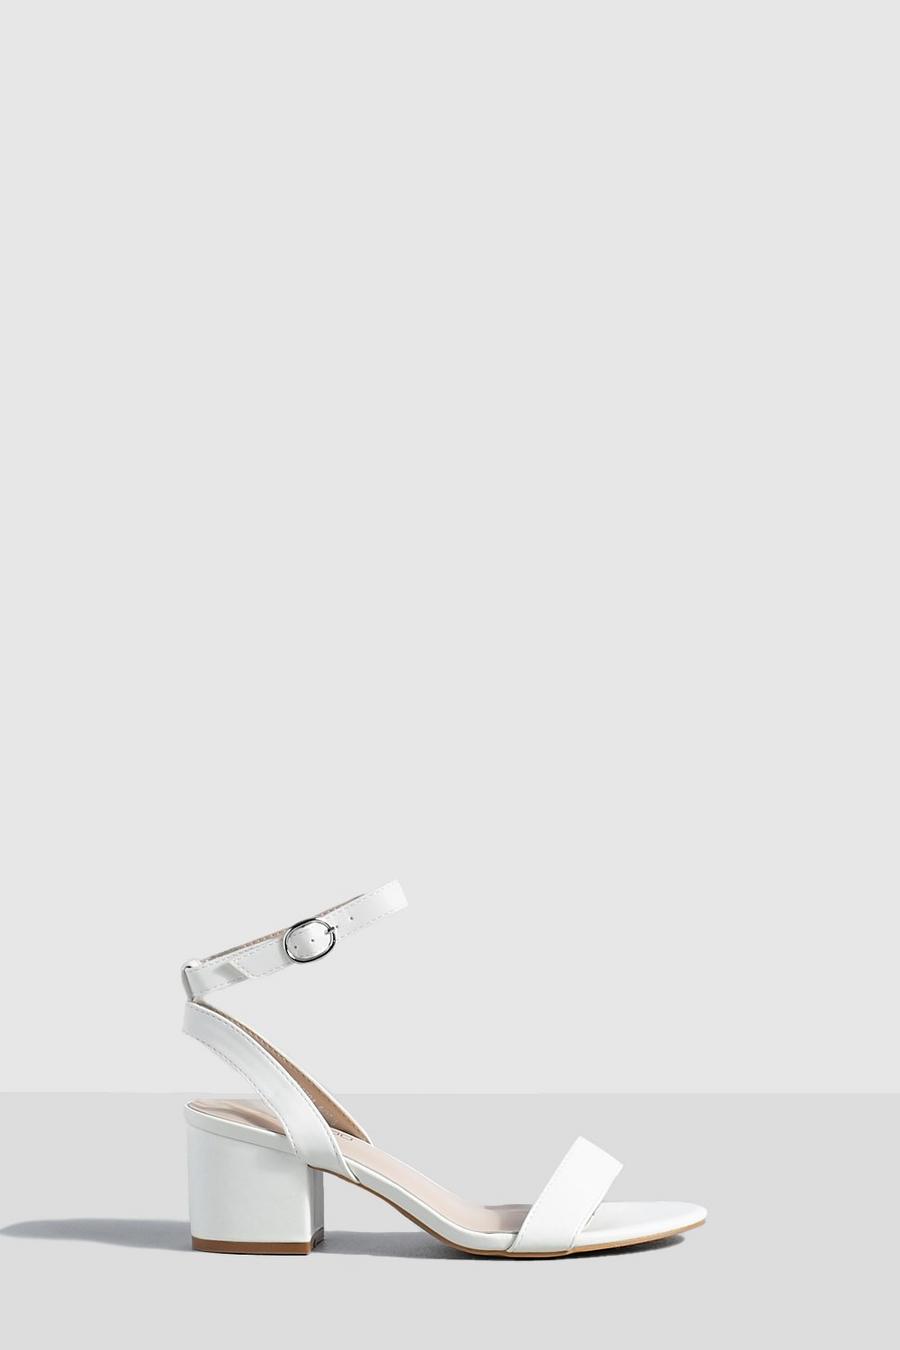 Scarpe effetto nudo con tacco basso a blocco, White bianco